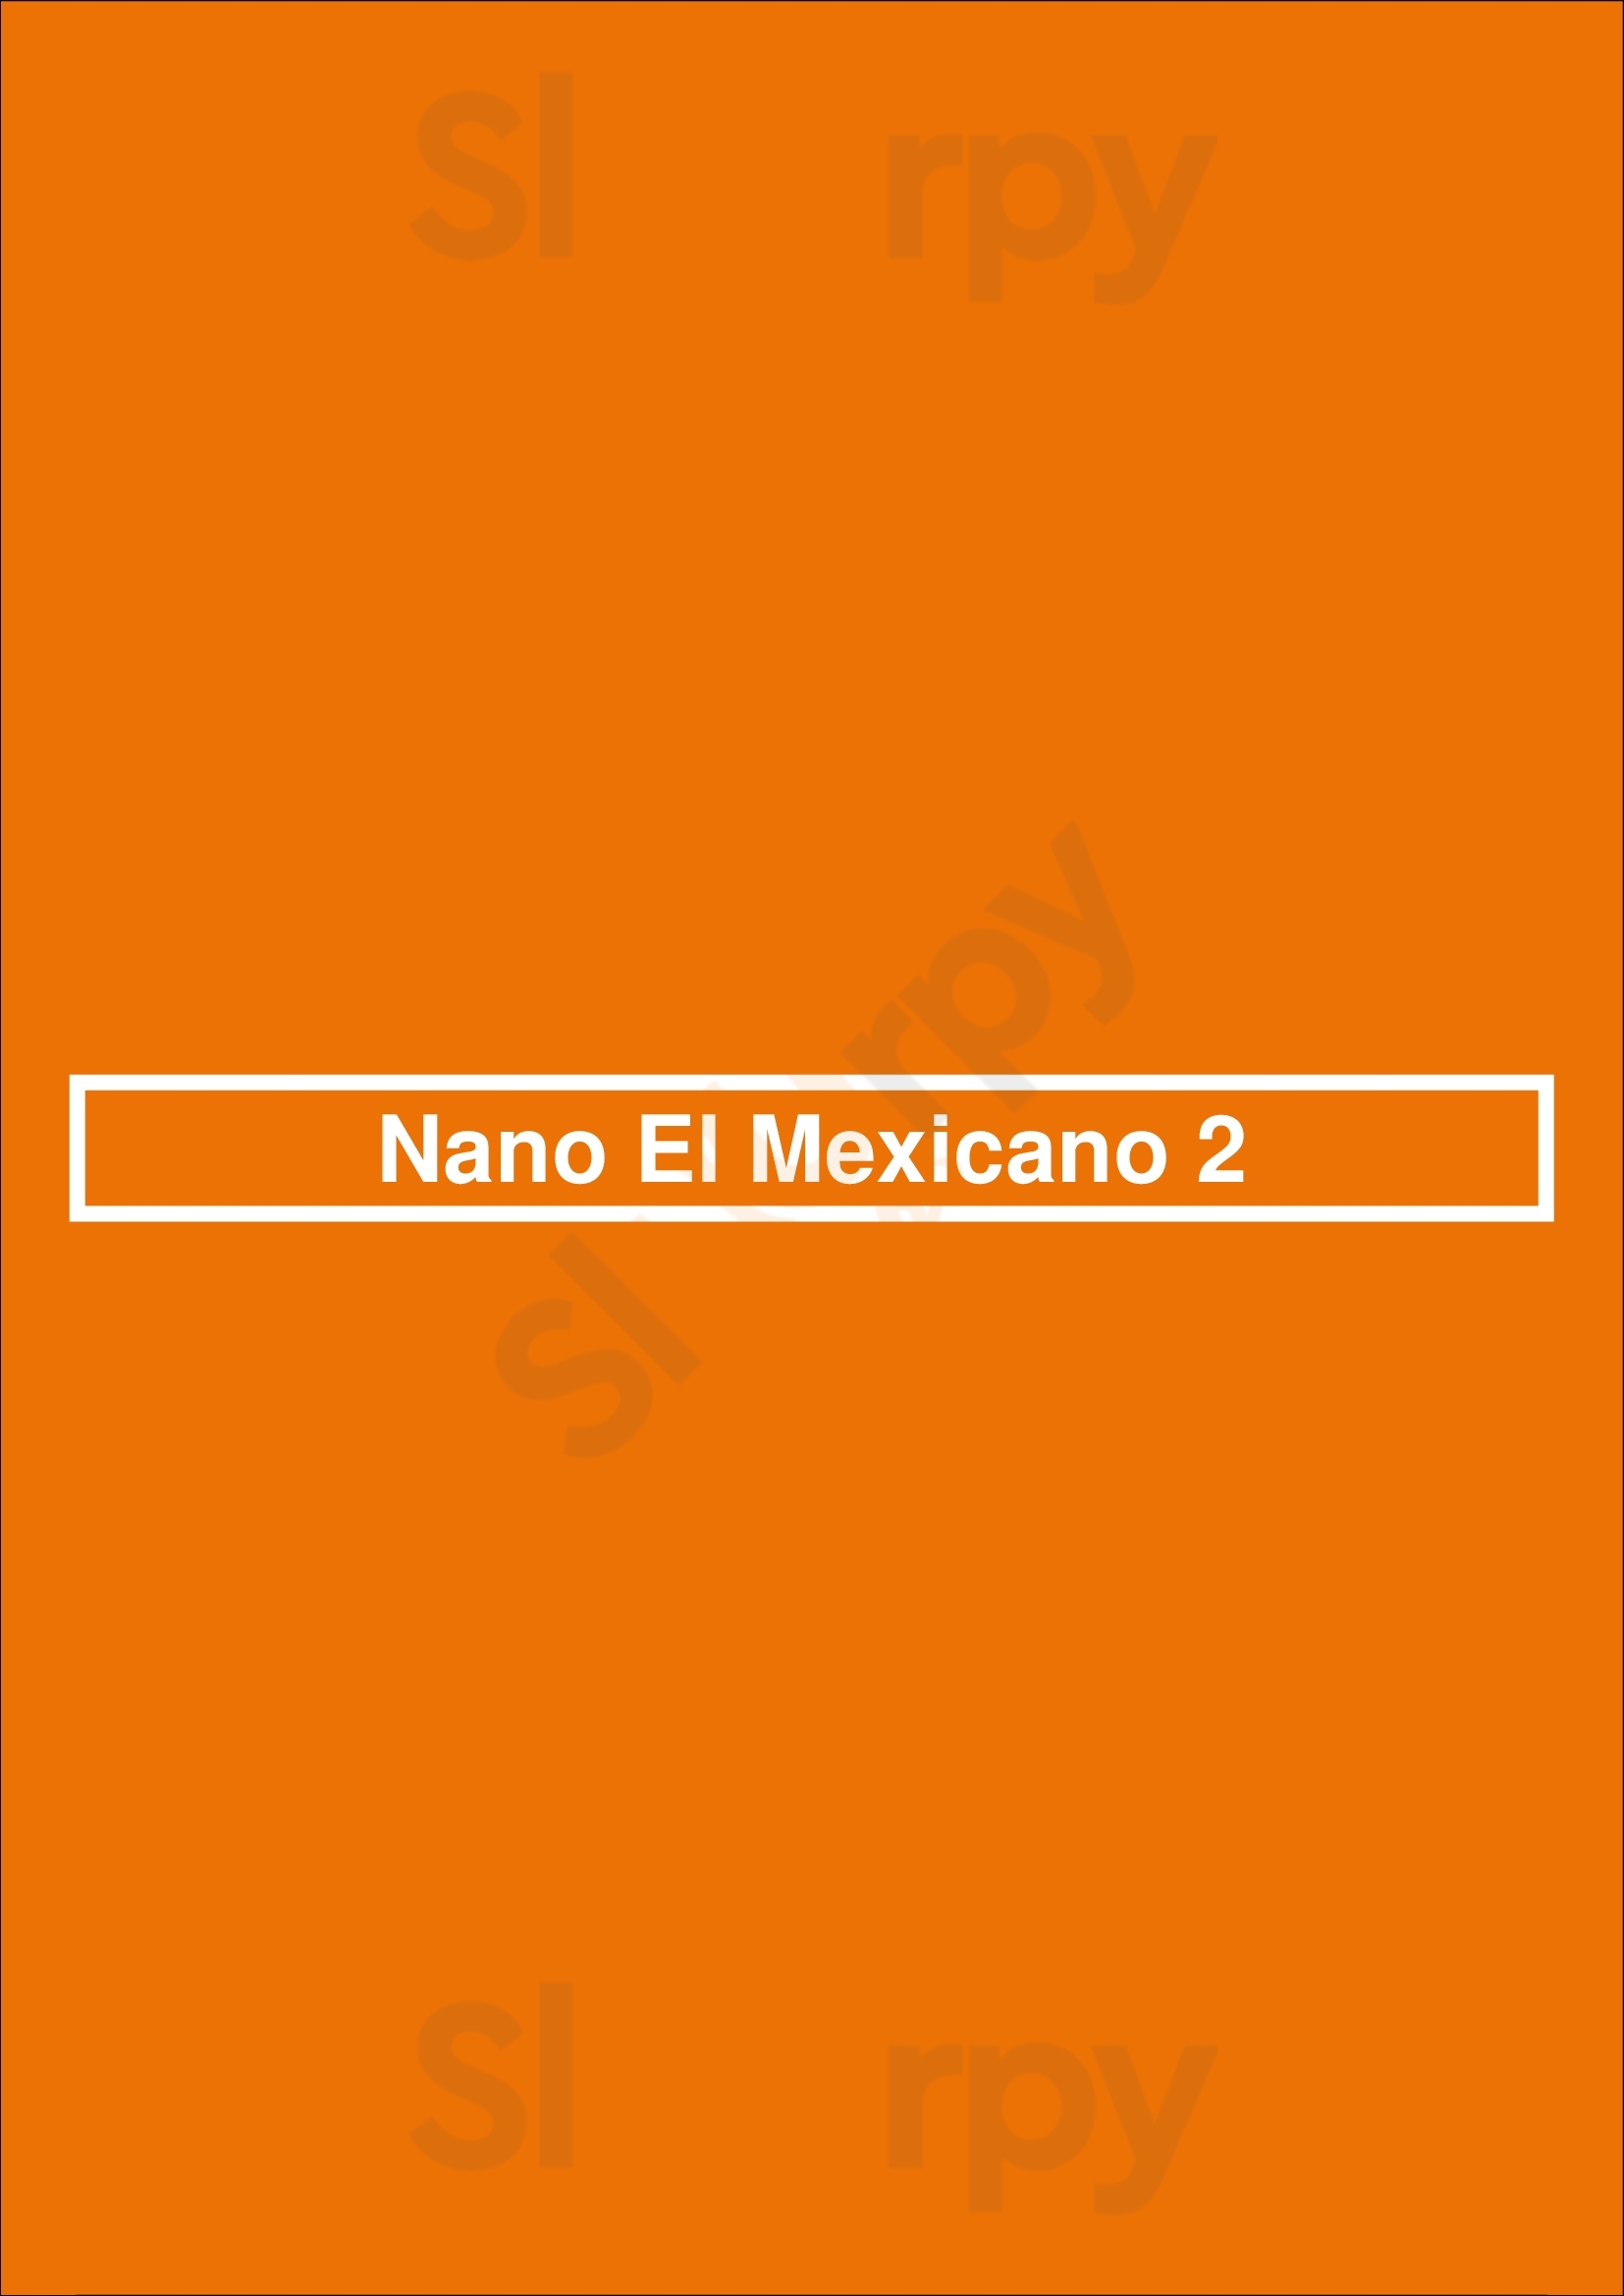 Nano El Mexicano 2 Madrid Menu - 1